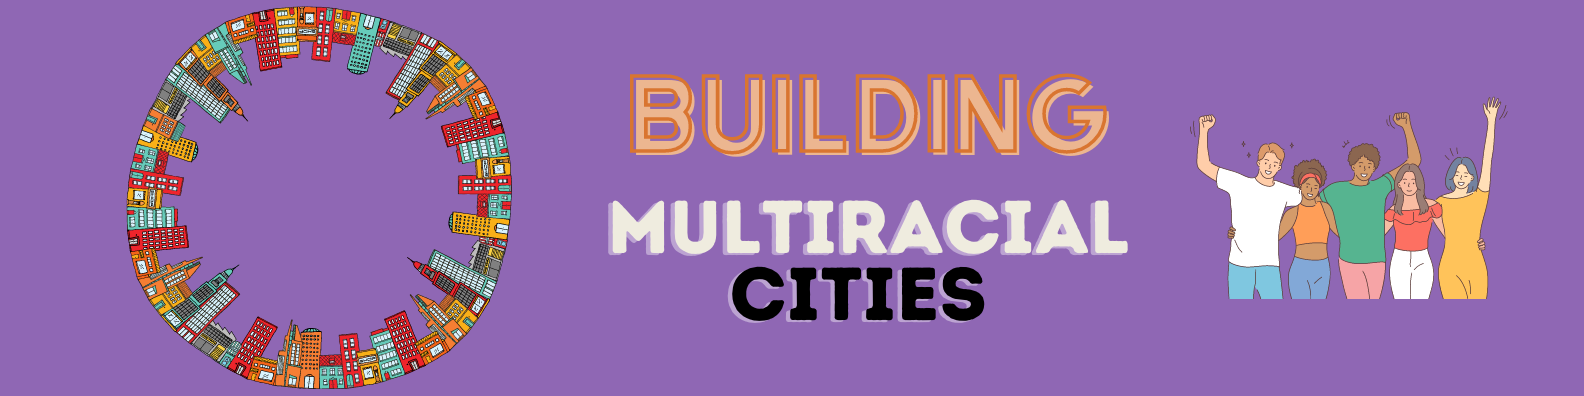 Building Multiracial Cities